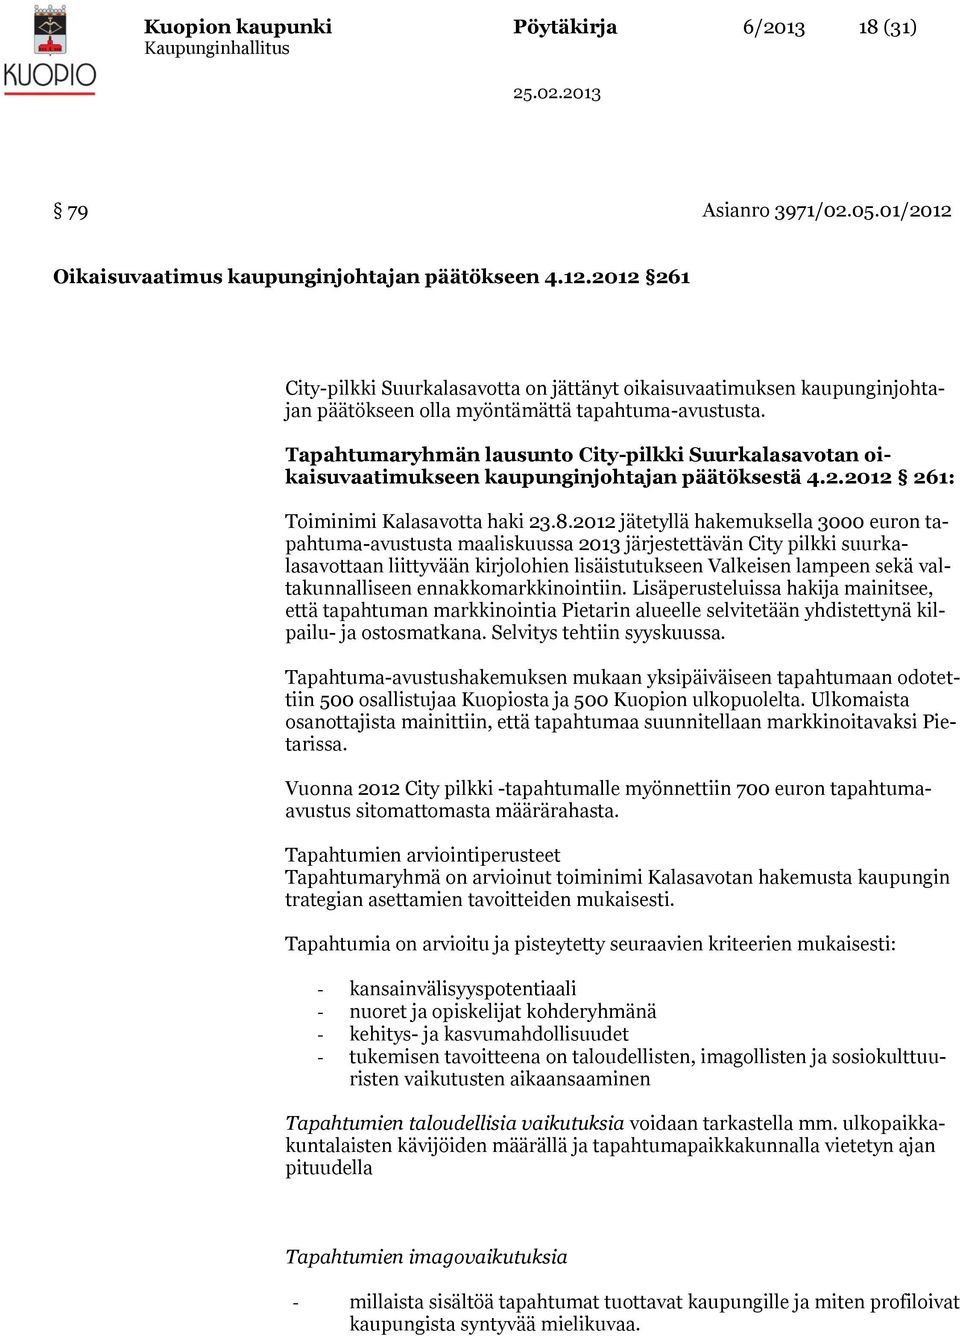 Tapahtumaryhmän lausunto City-pilkki Suurkalasavotan oikaisuvaatimukseen kaupunginjohtajan päätöksestä 4.2.2012 261: Toiminimi Kalasavotta haki 23.8.